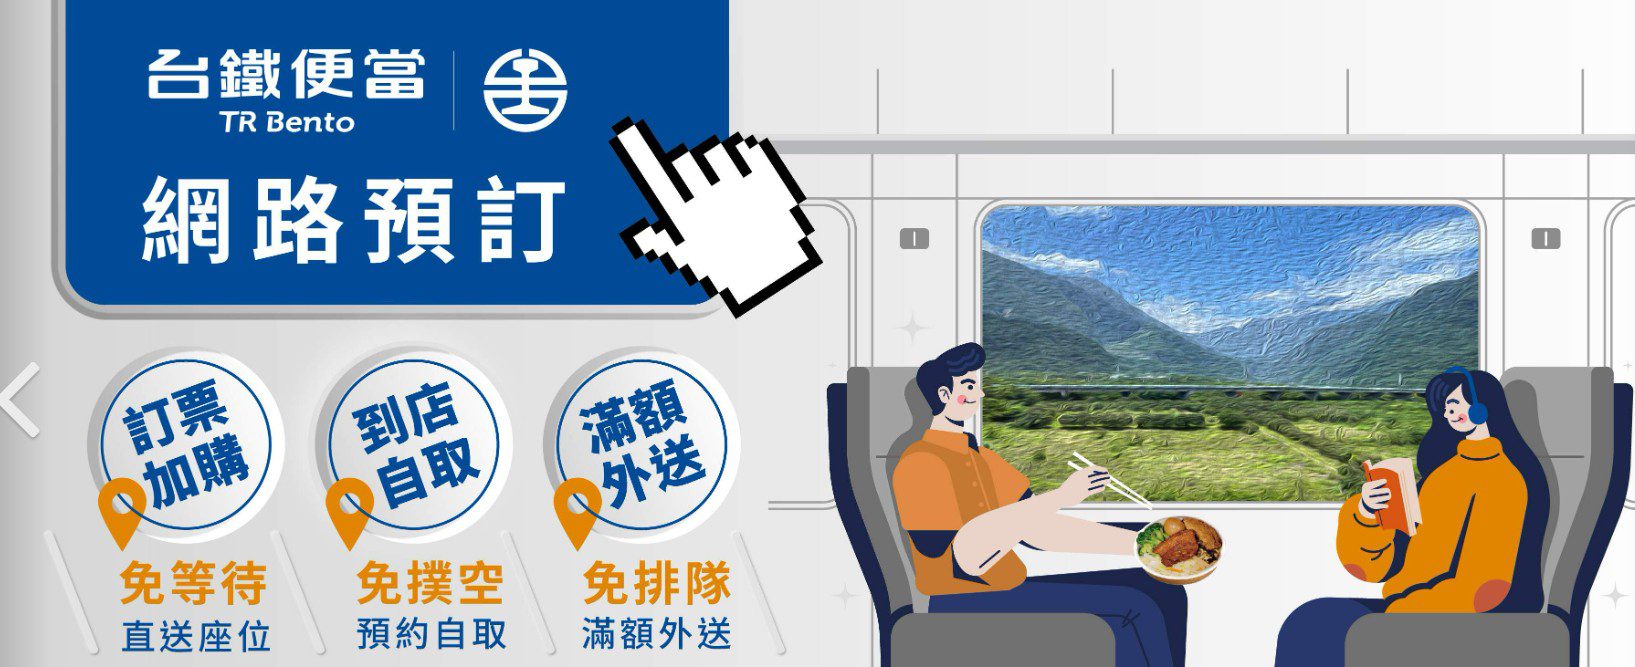 臺鐵公司母親節加開列車 4月12日0時開放訂票